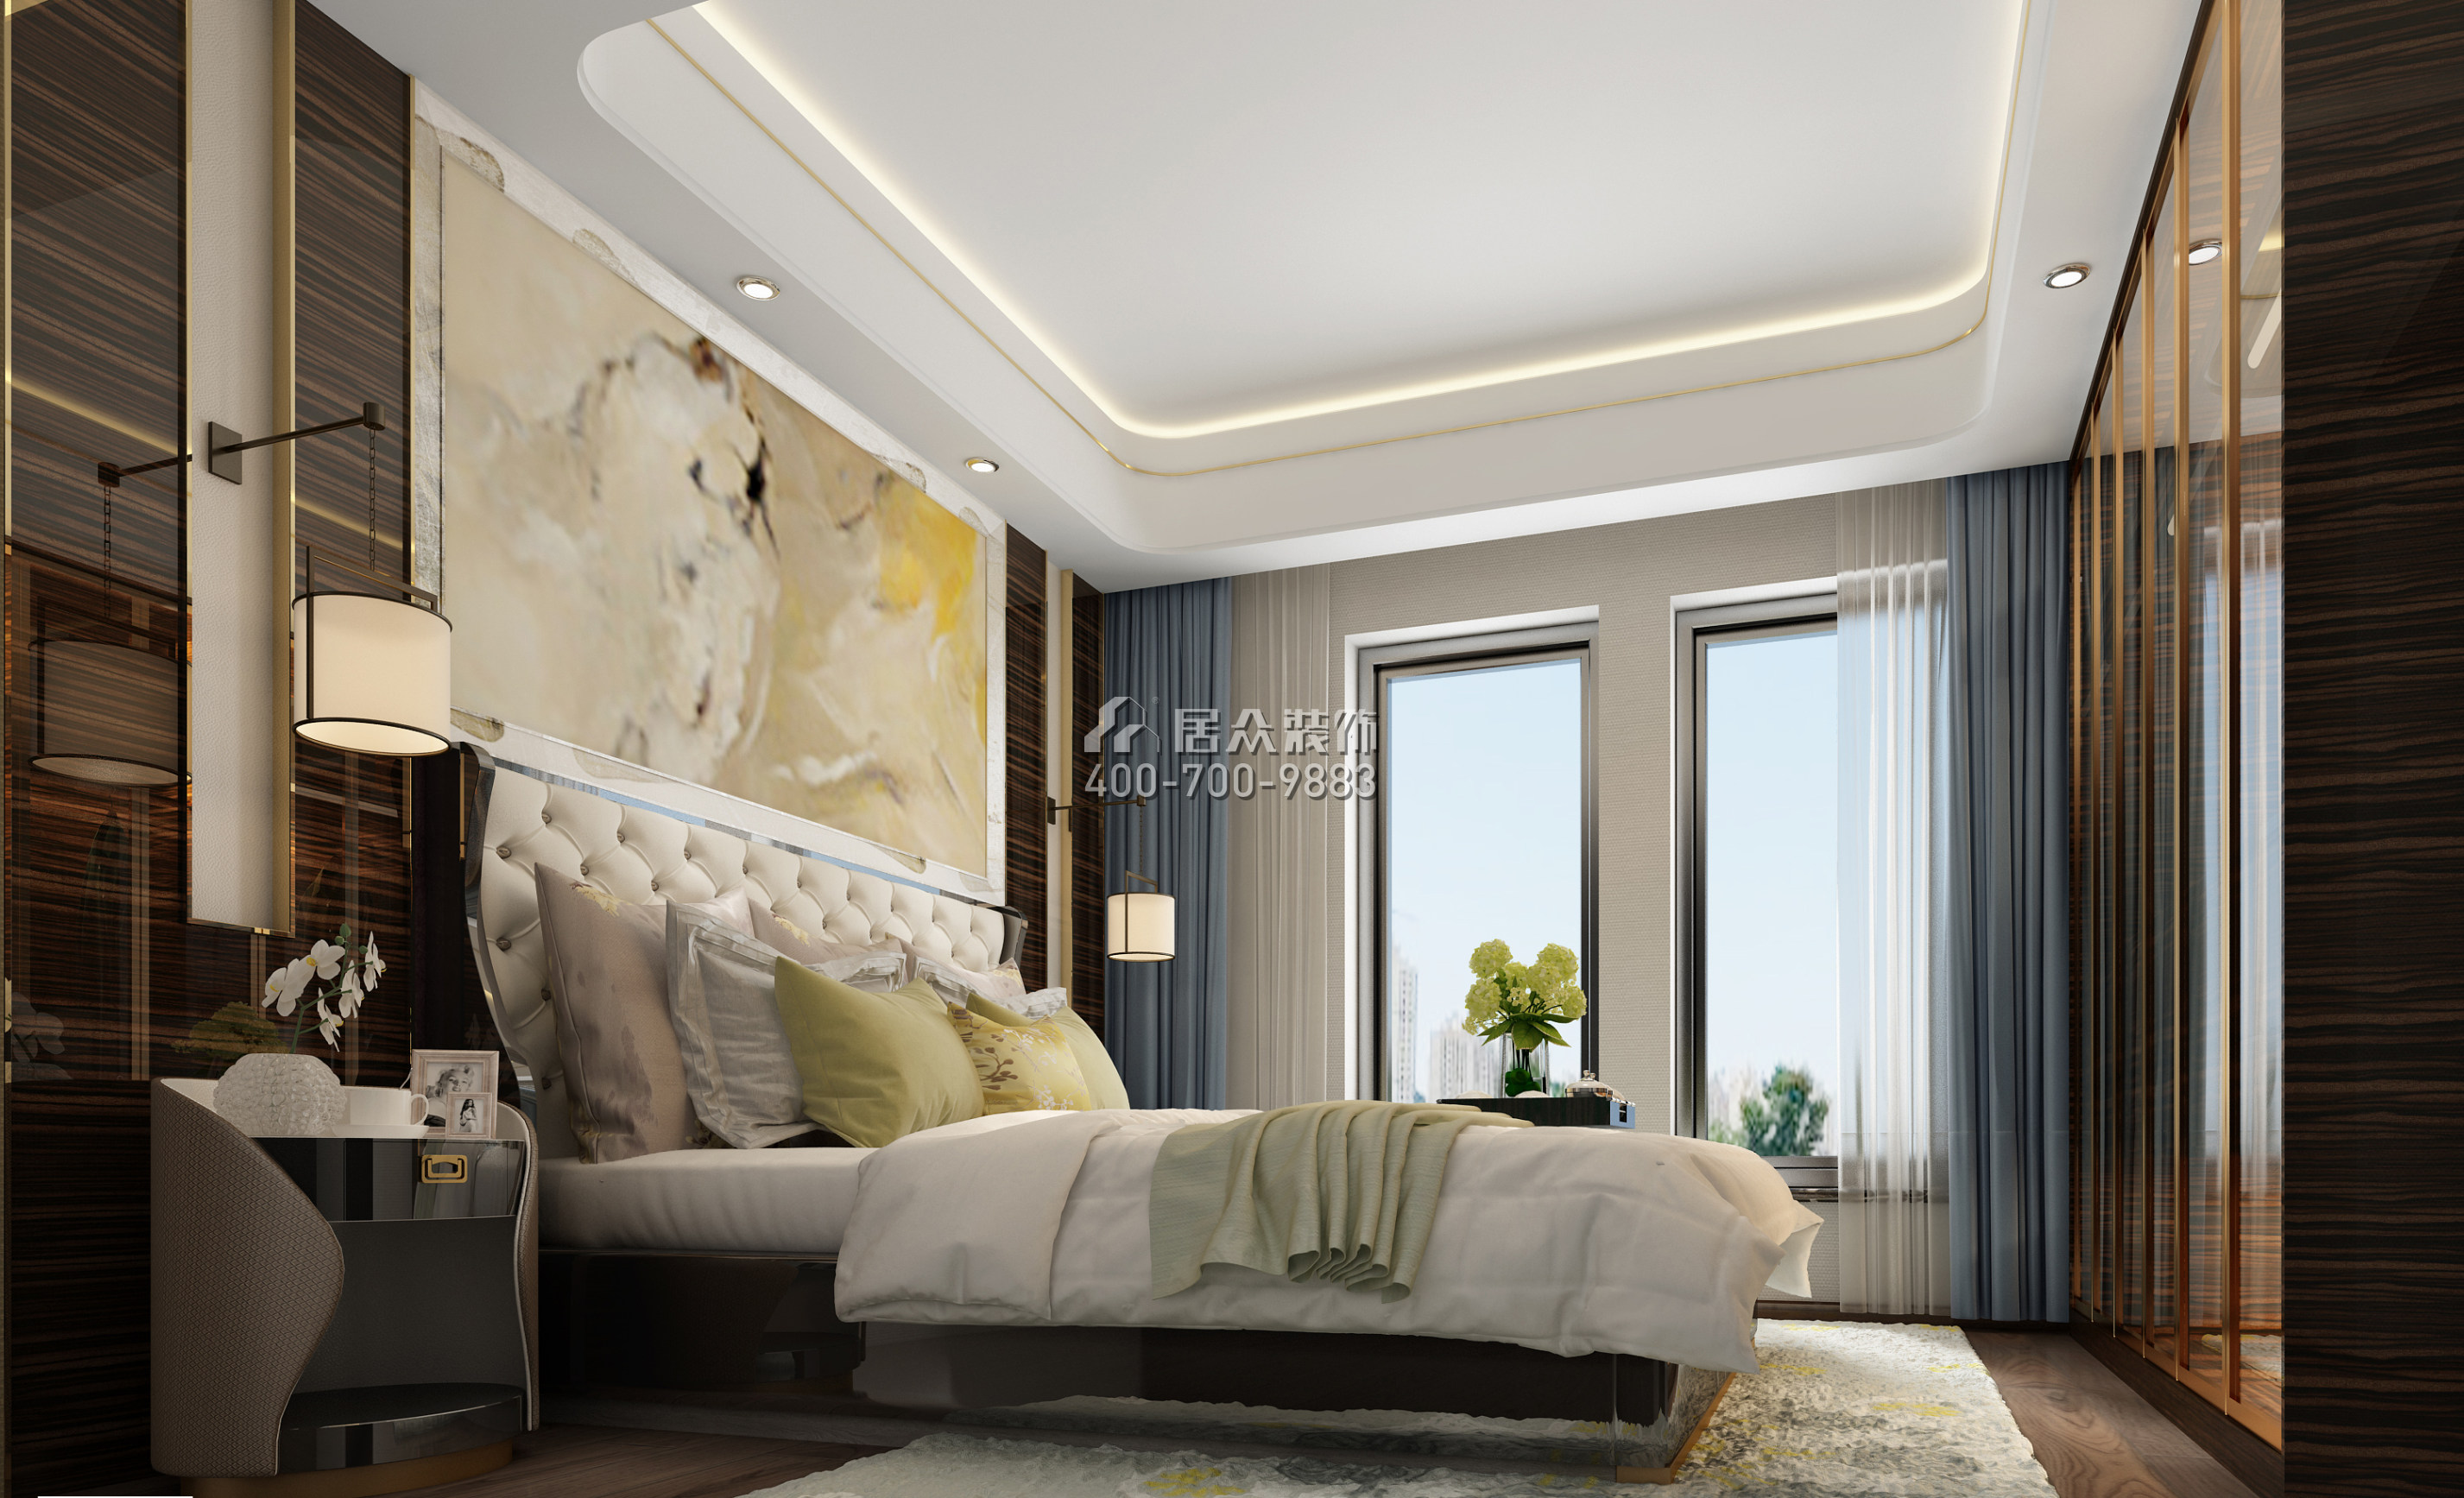 第六都170平方米新古典风格平层户型卧室装修效果图